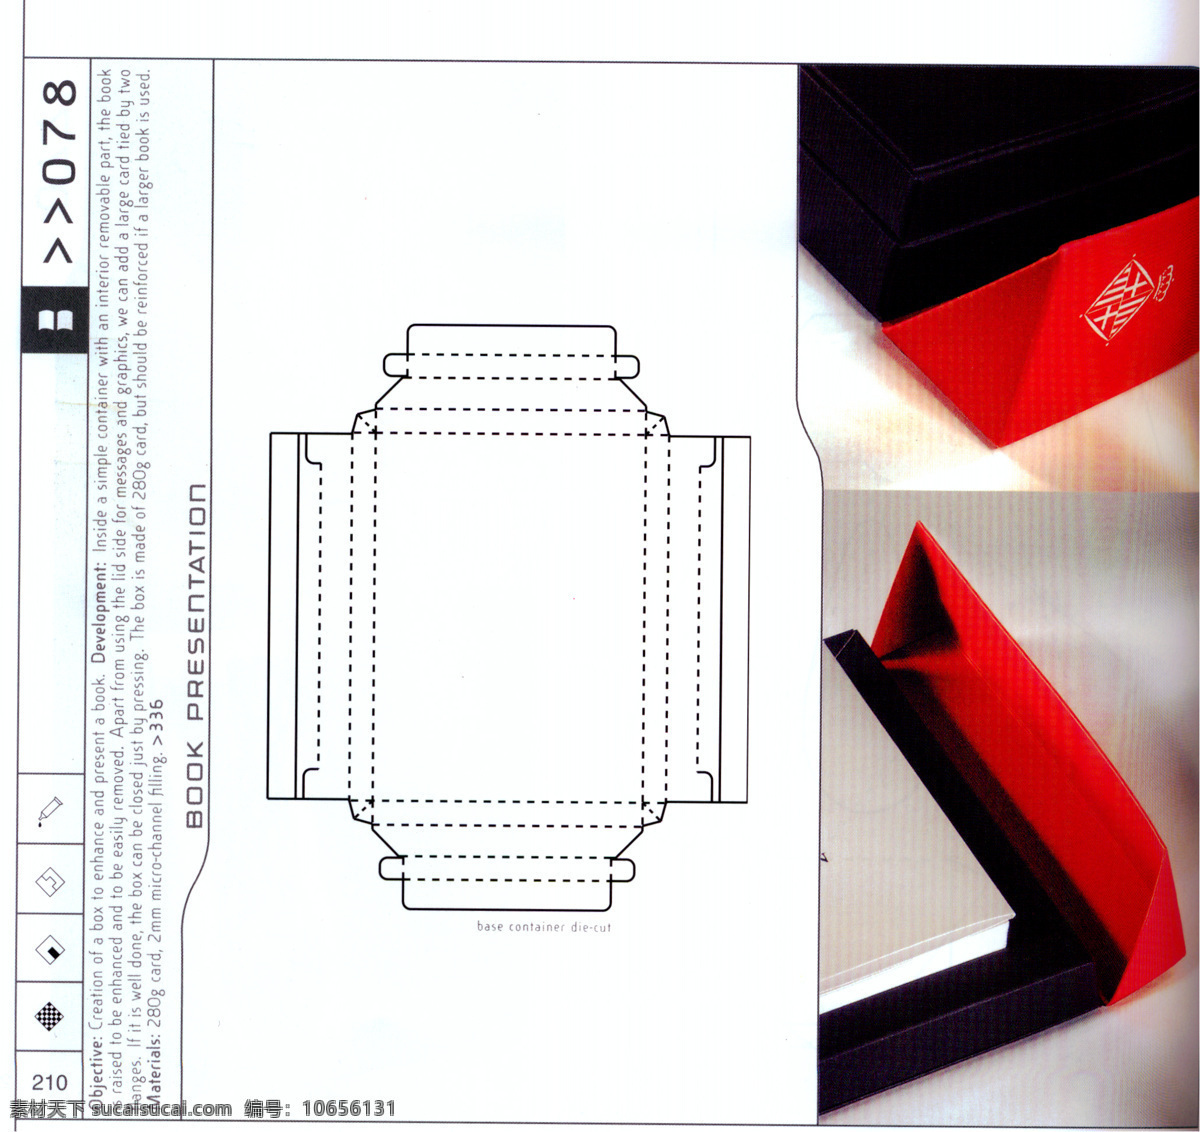 包装盒设计 刀模数据 包装 效果图 098 设计素材 刀模效果 包装设计 平面设计 白色